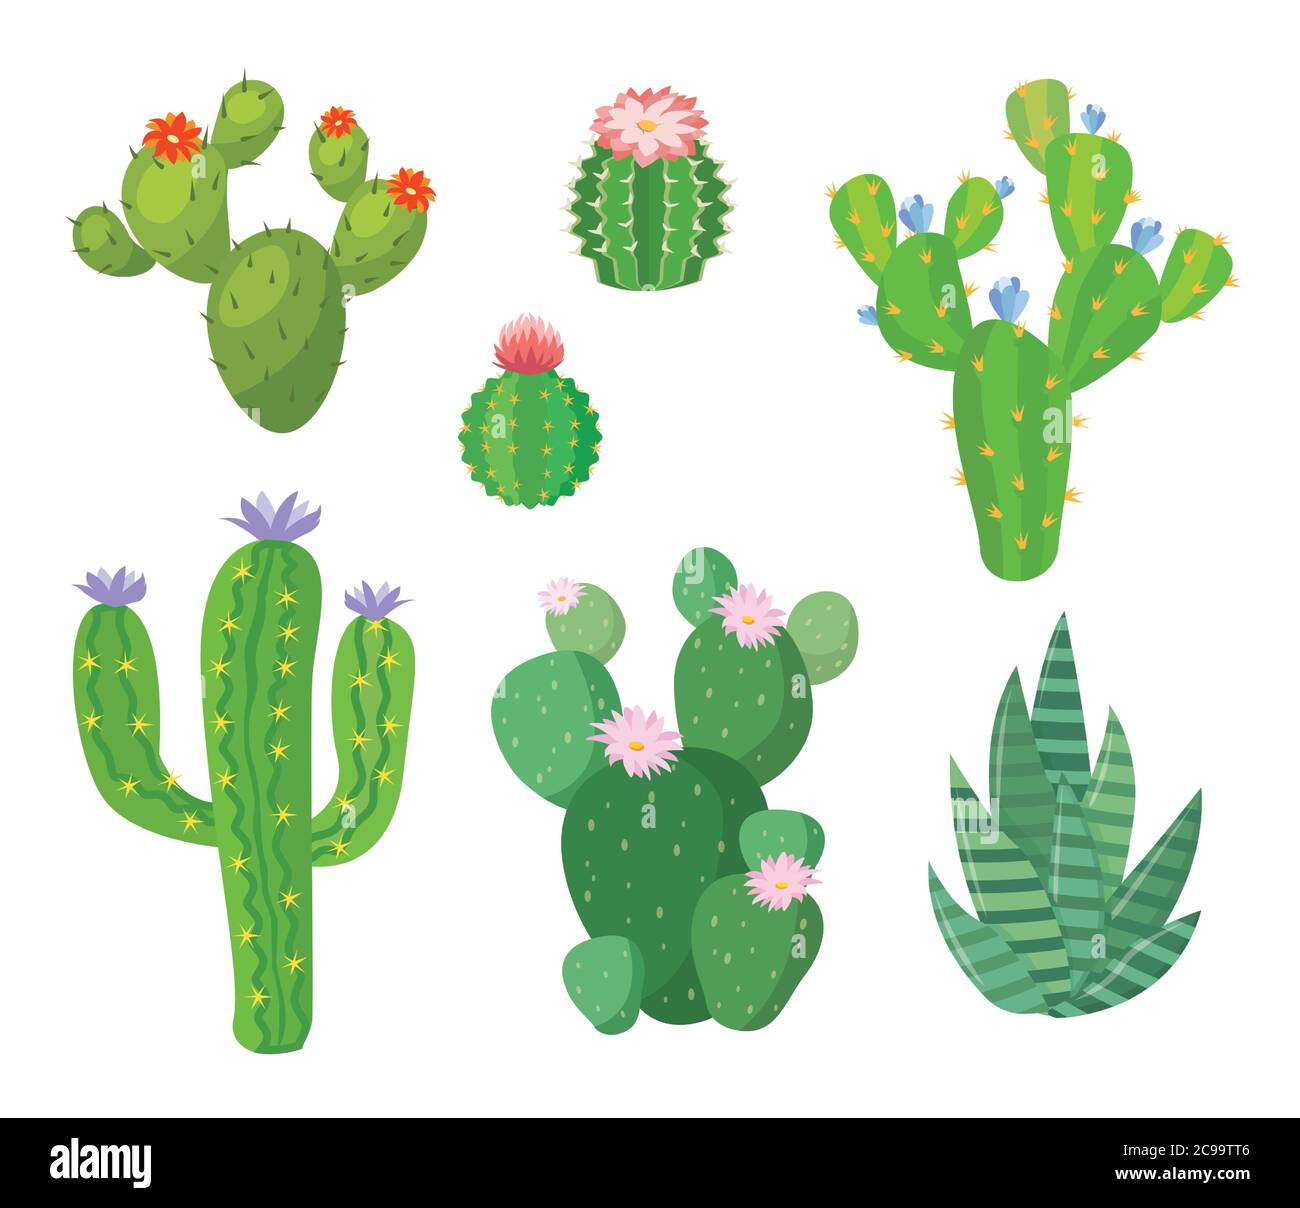 Cartoon Kaktus Set. Vektor-Set von hellen Kakteen und Aloe. Farbige, helle Kaktusblüten isoliert auf weißem Hintergrund. Stock Vektor